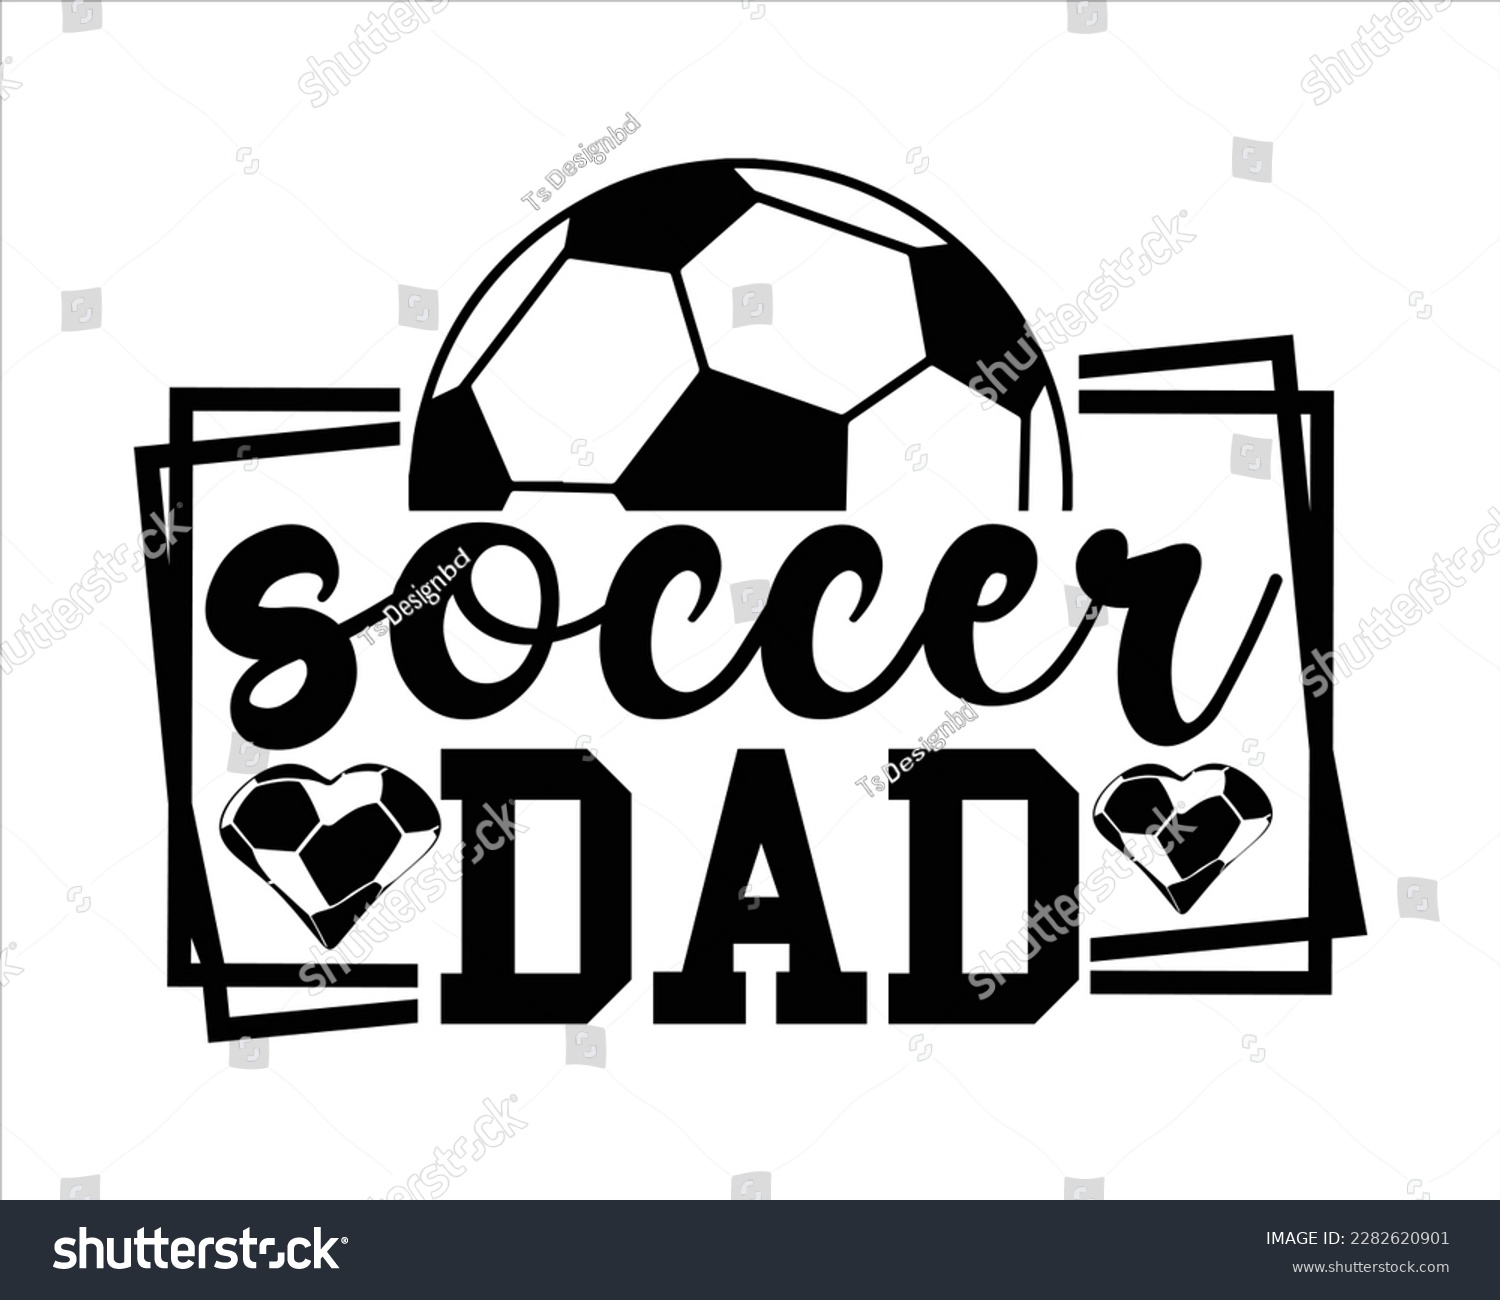 SVG of Soccer Dad Svg Design,Soccer svg Design,Soccer Mom Svg,Game Day Svg, Retro Soccer Svg,Soccer Quote,Proud Soccer Svg svg